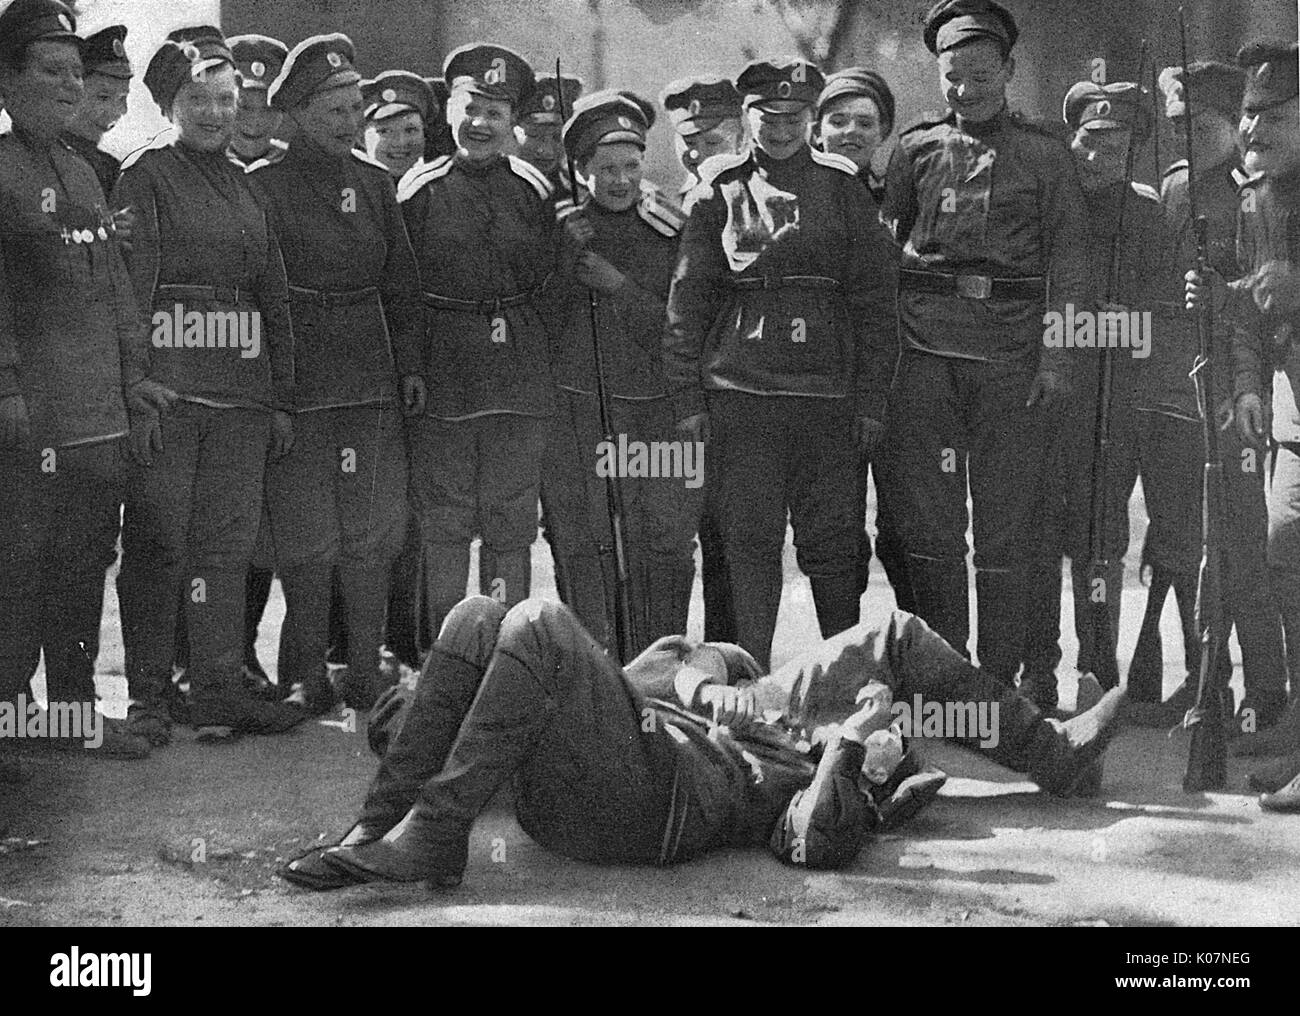 Maria Bochkareva with Women's Battalion, Russia, WW1 Stock Photo